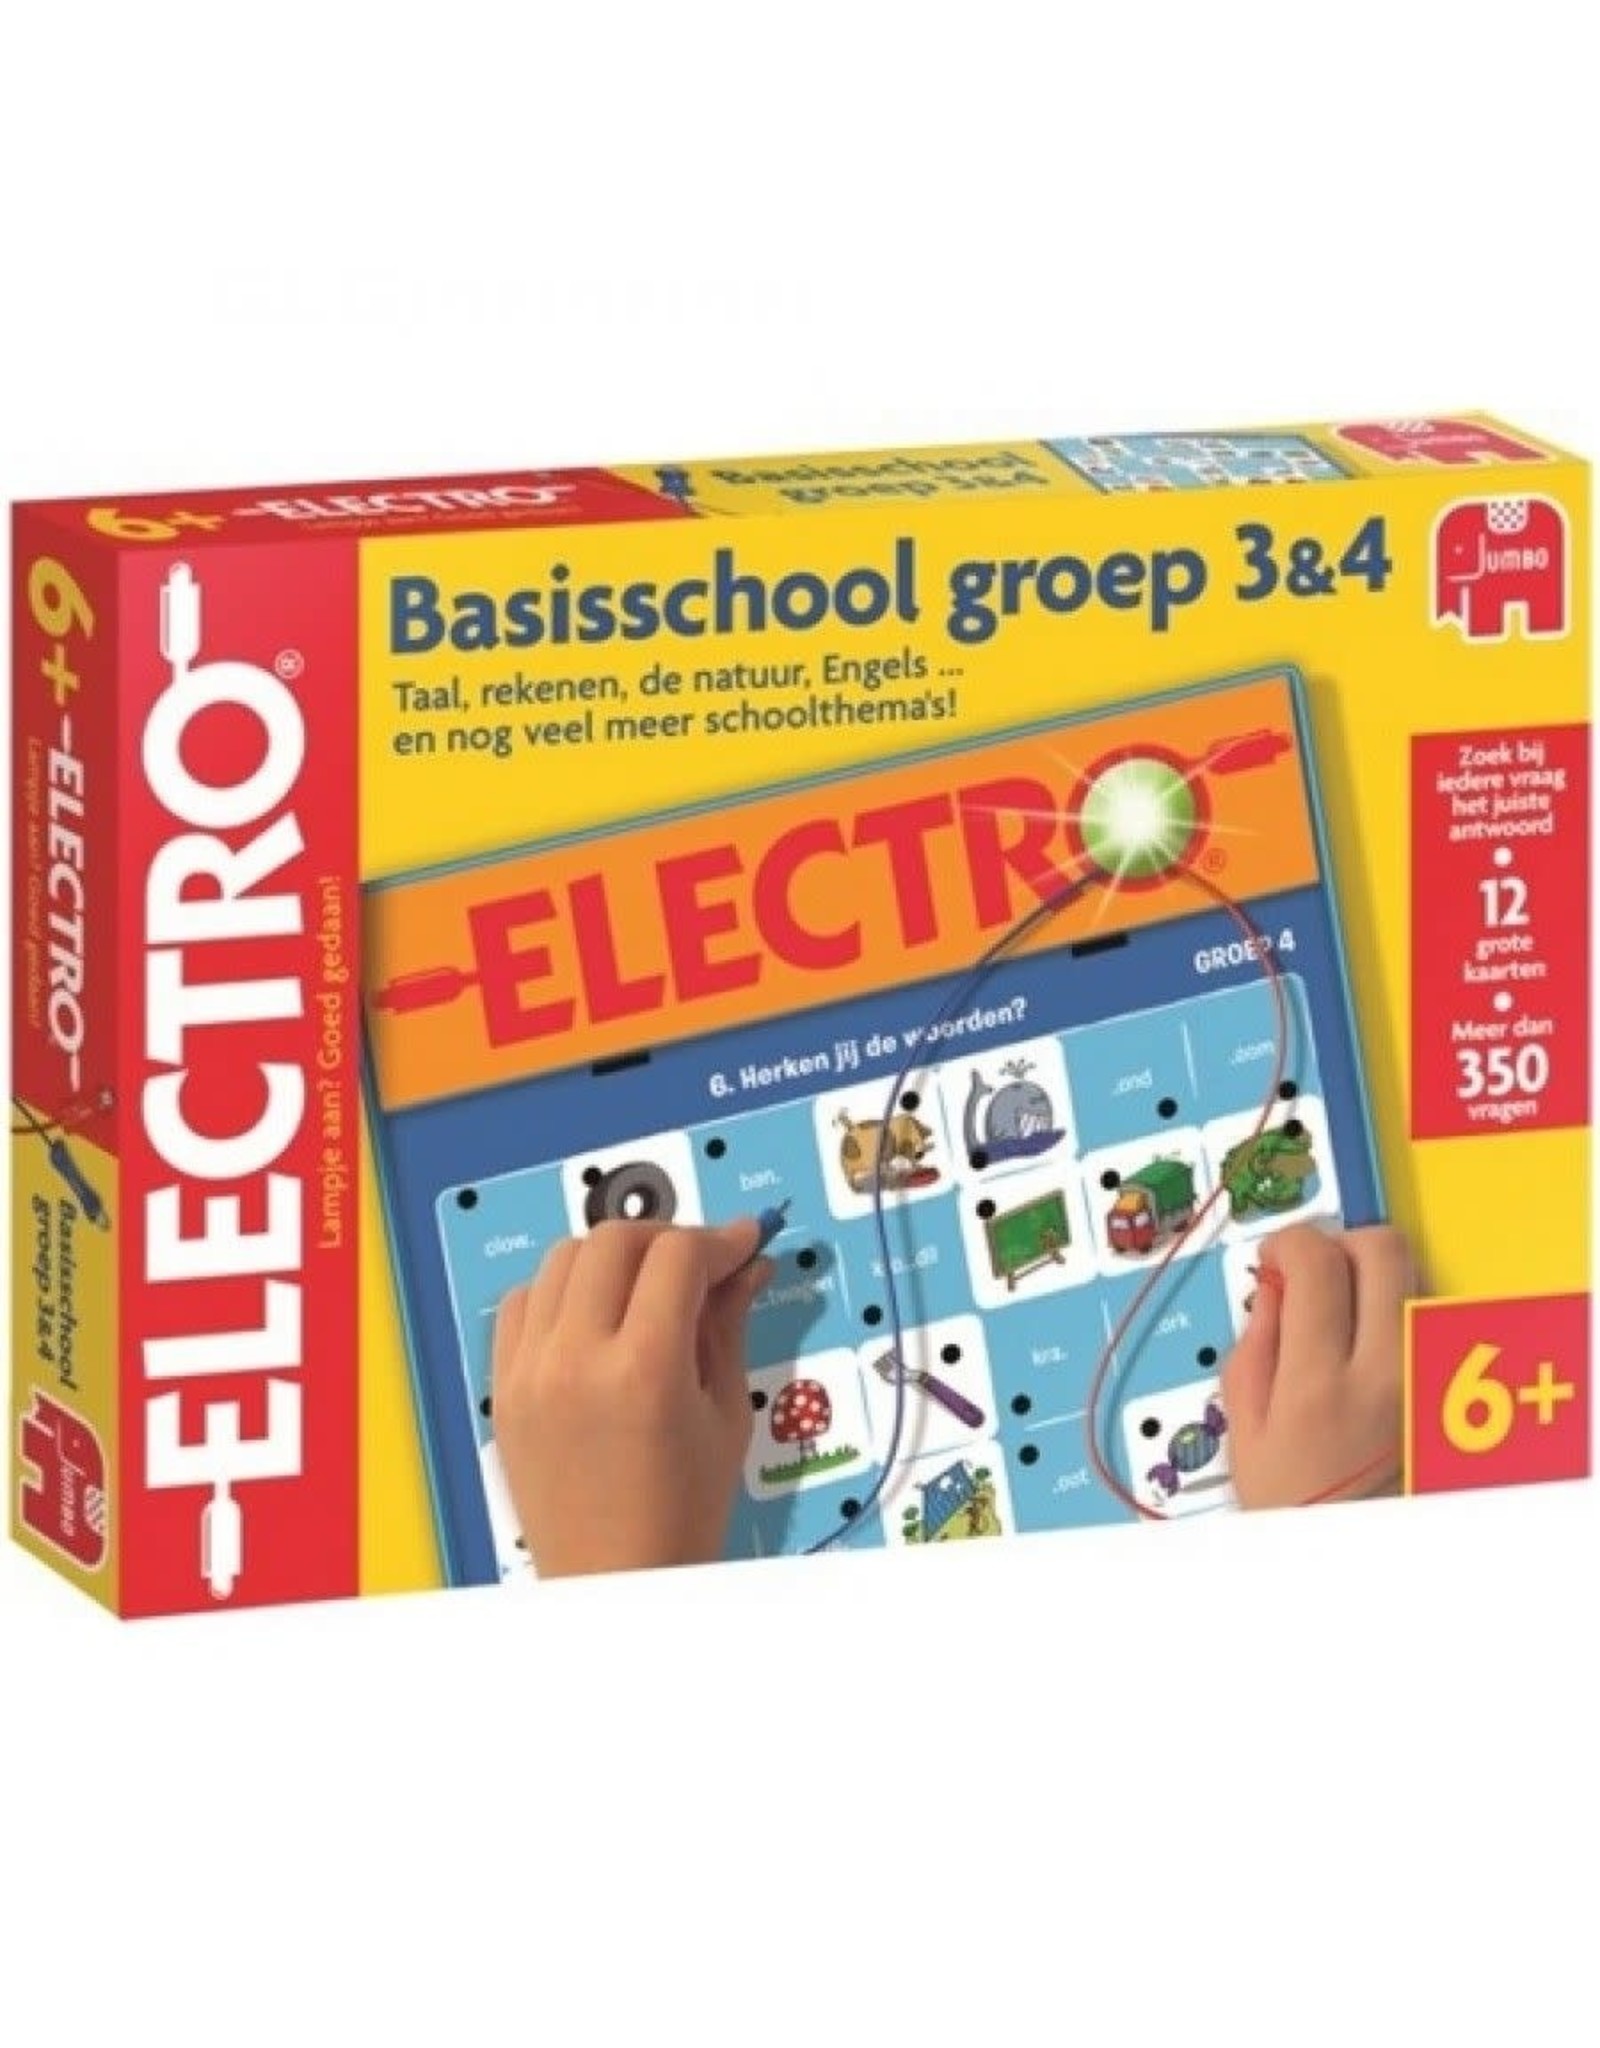 Jumbo Electro Basisschool Groep 3&4